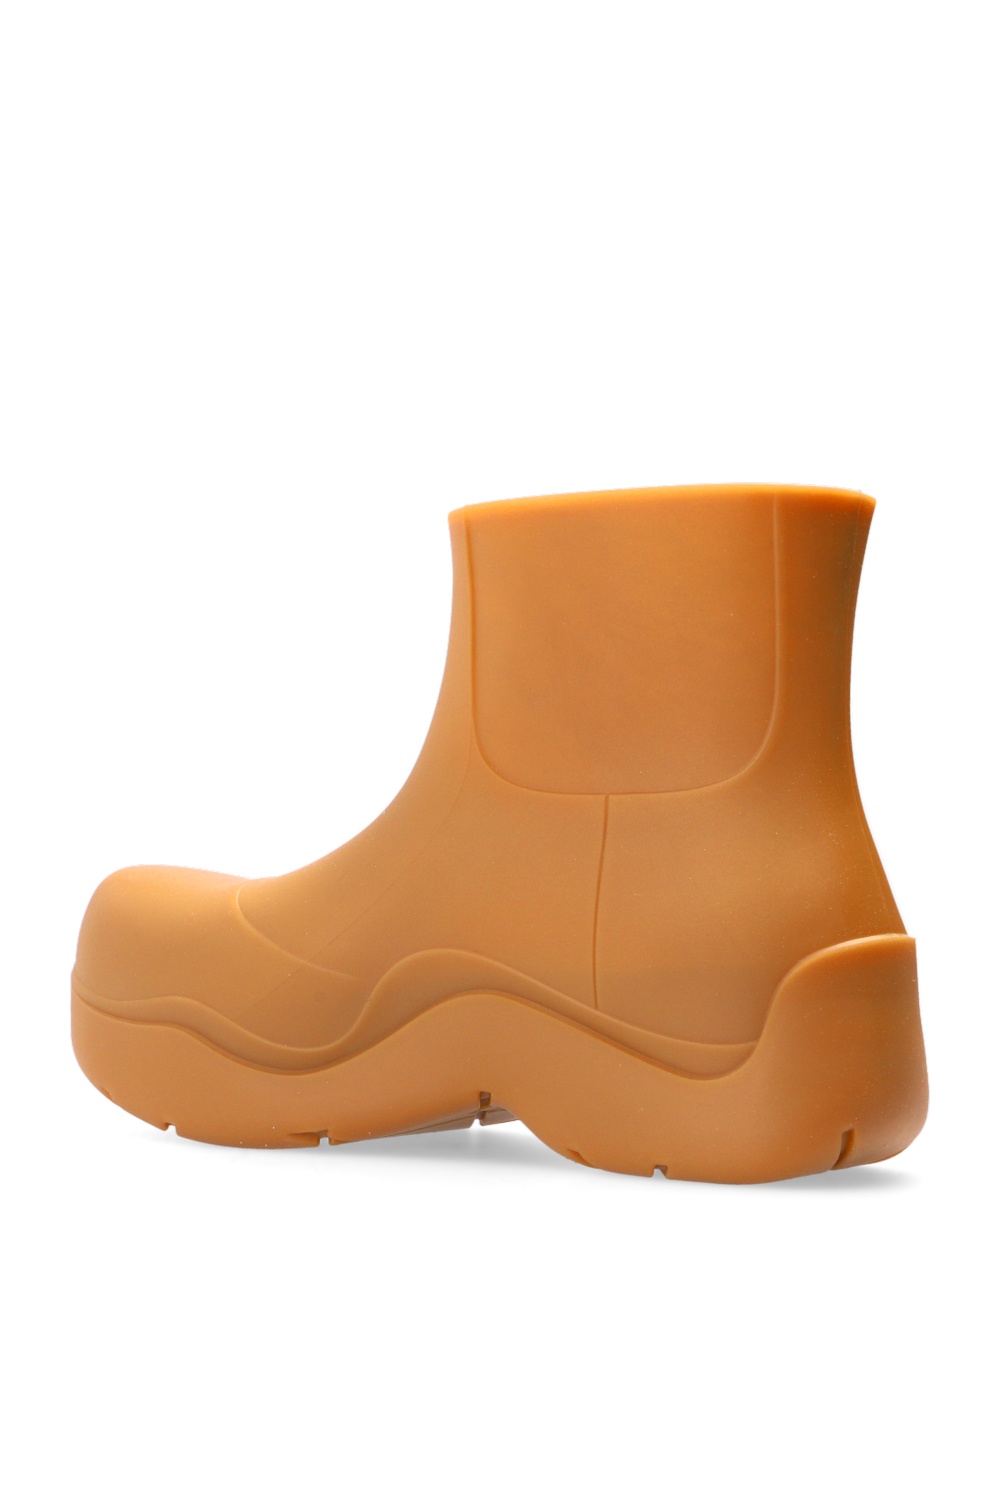 Bottega Veneta ‘Puddle’ rain boots | Men's Shoes | Vitkac